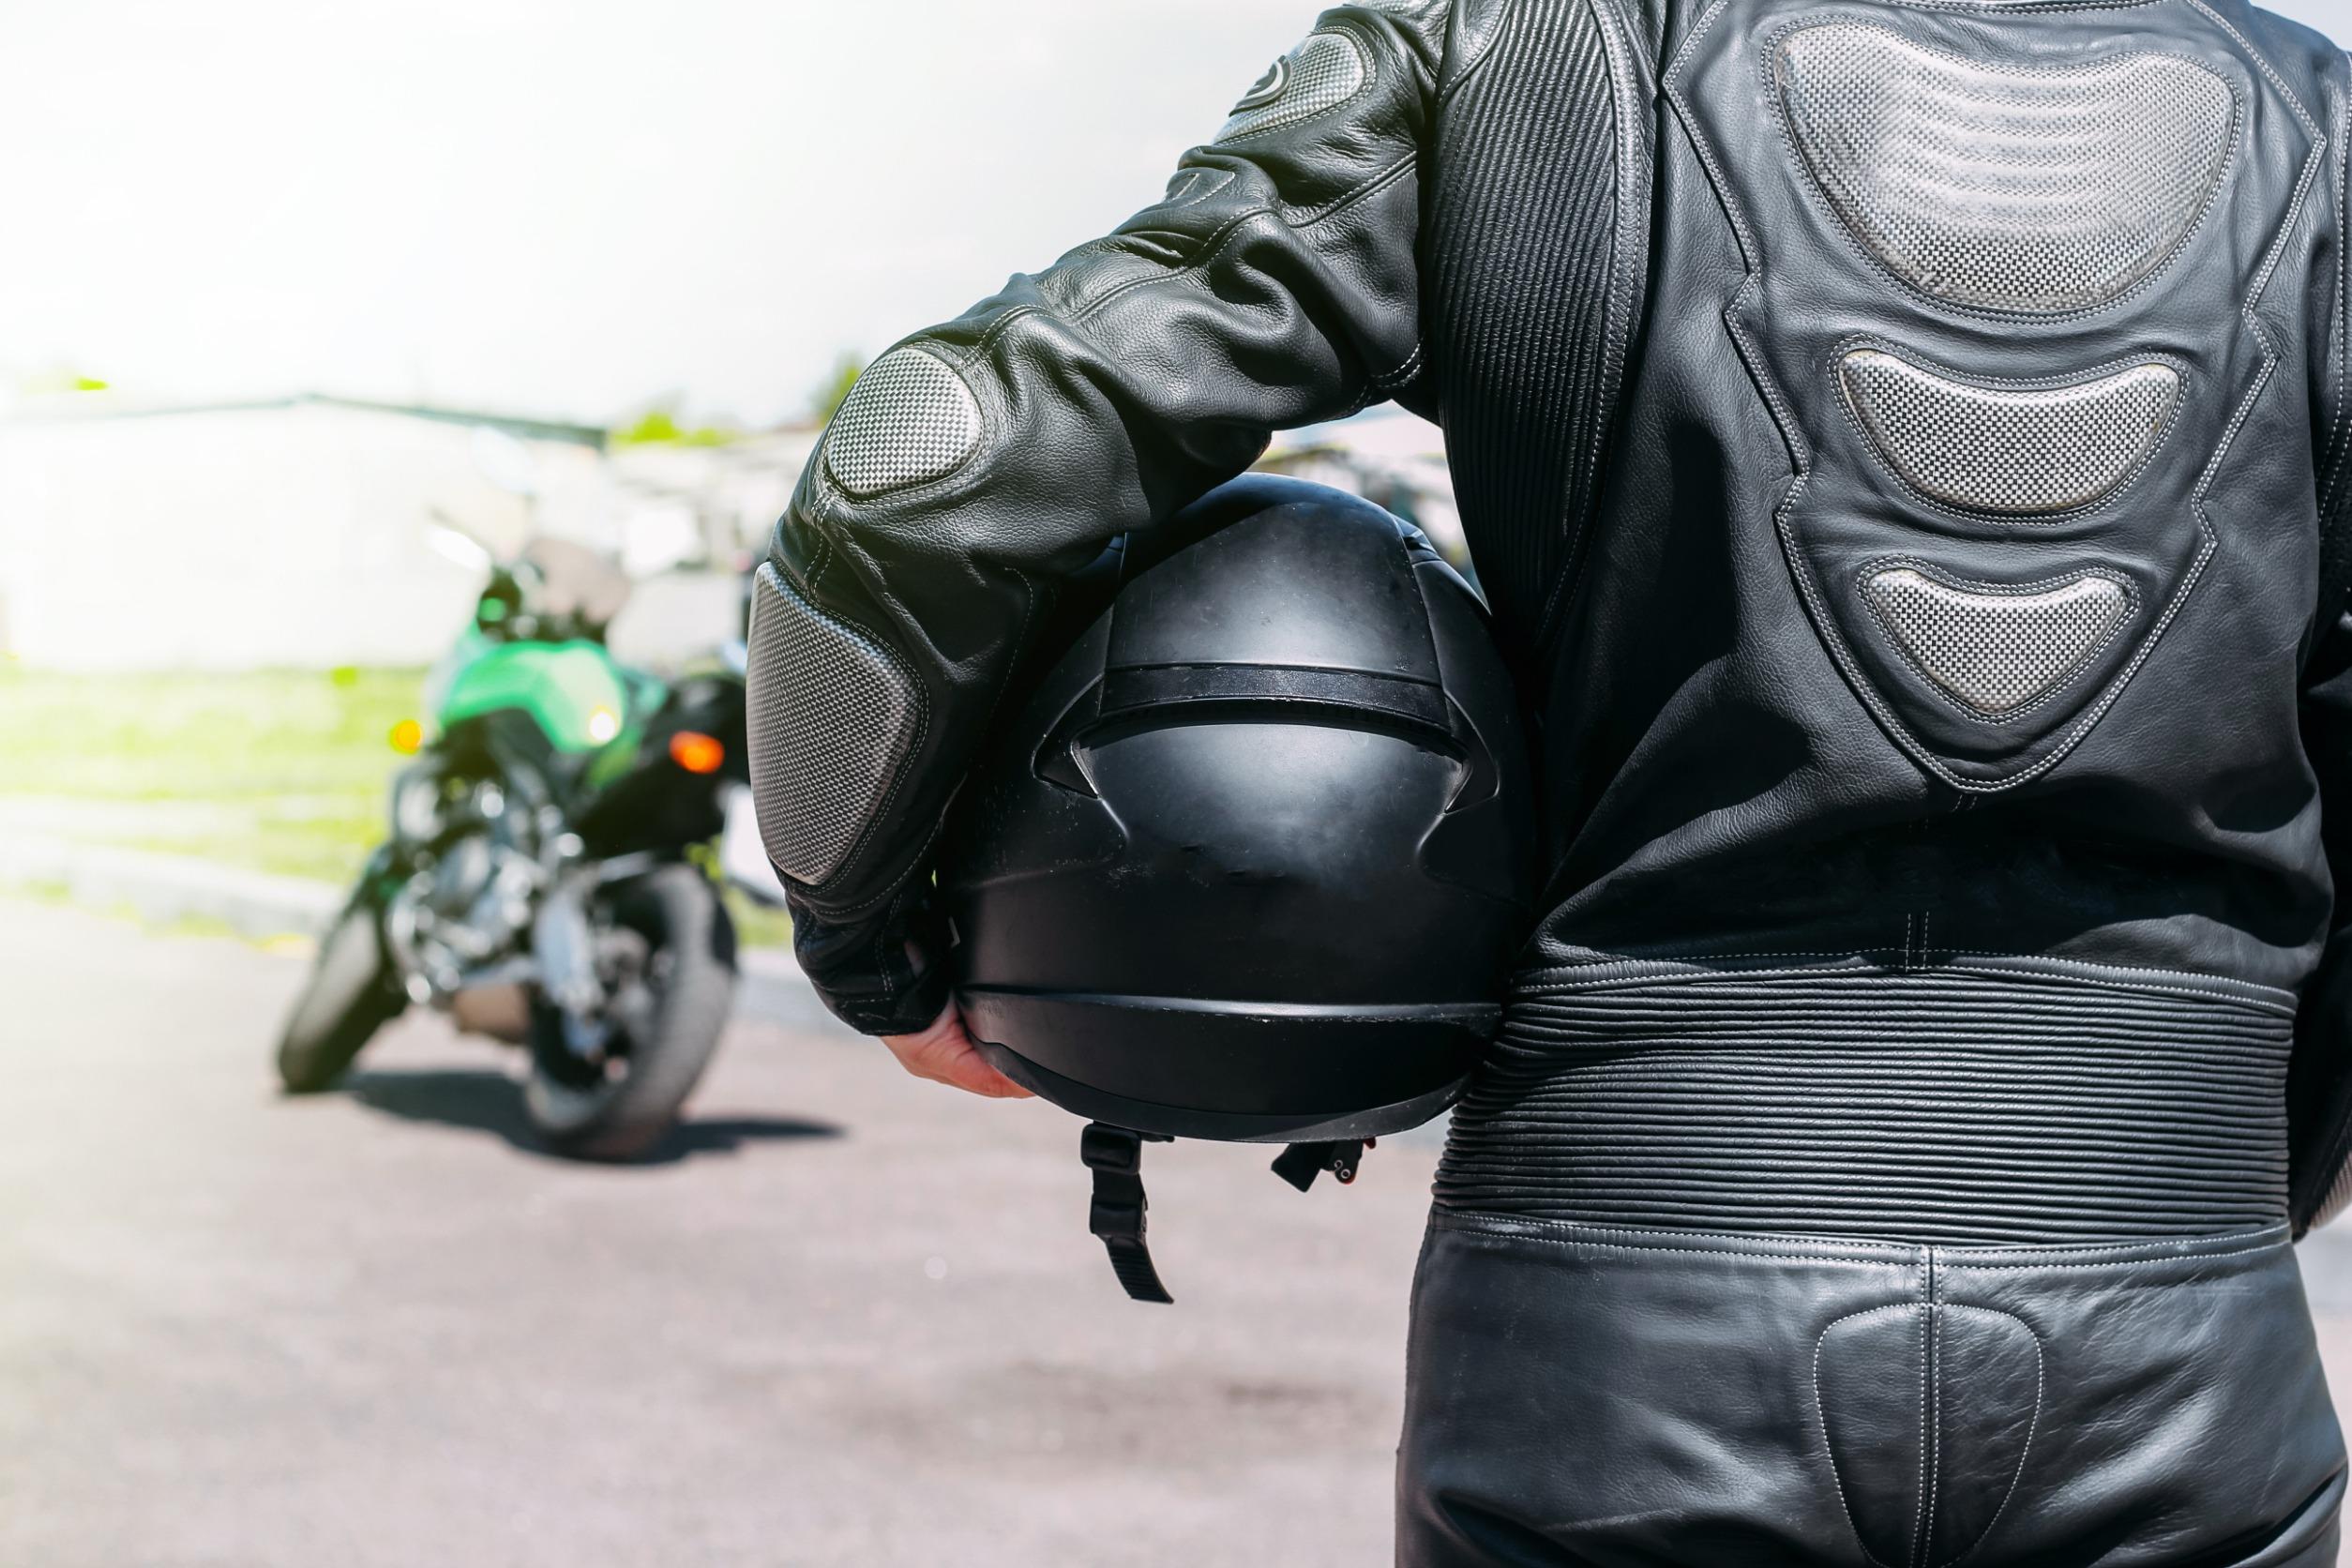 come scegliere le protezioni di sicurezza in moto - motoreporter